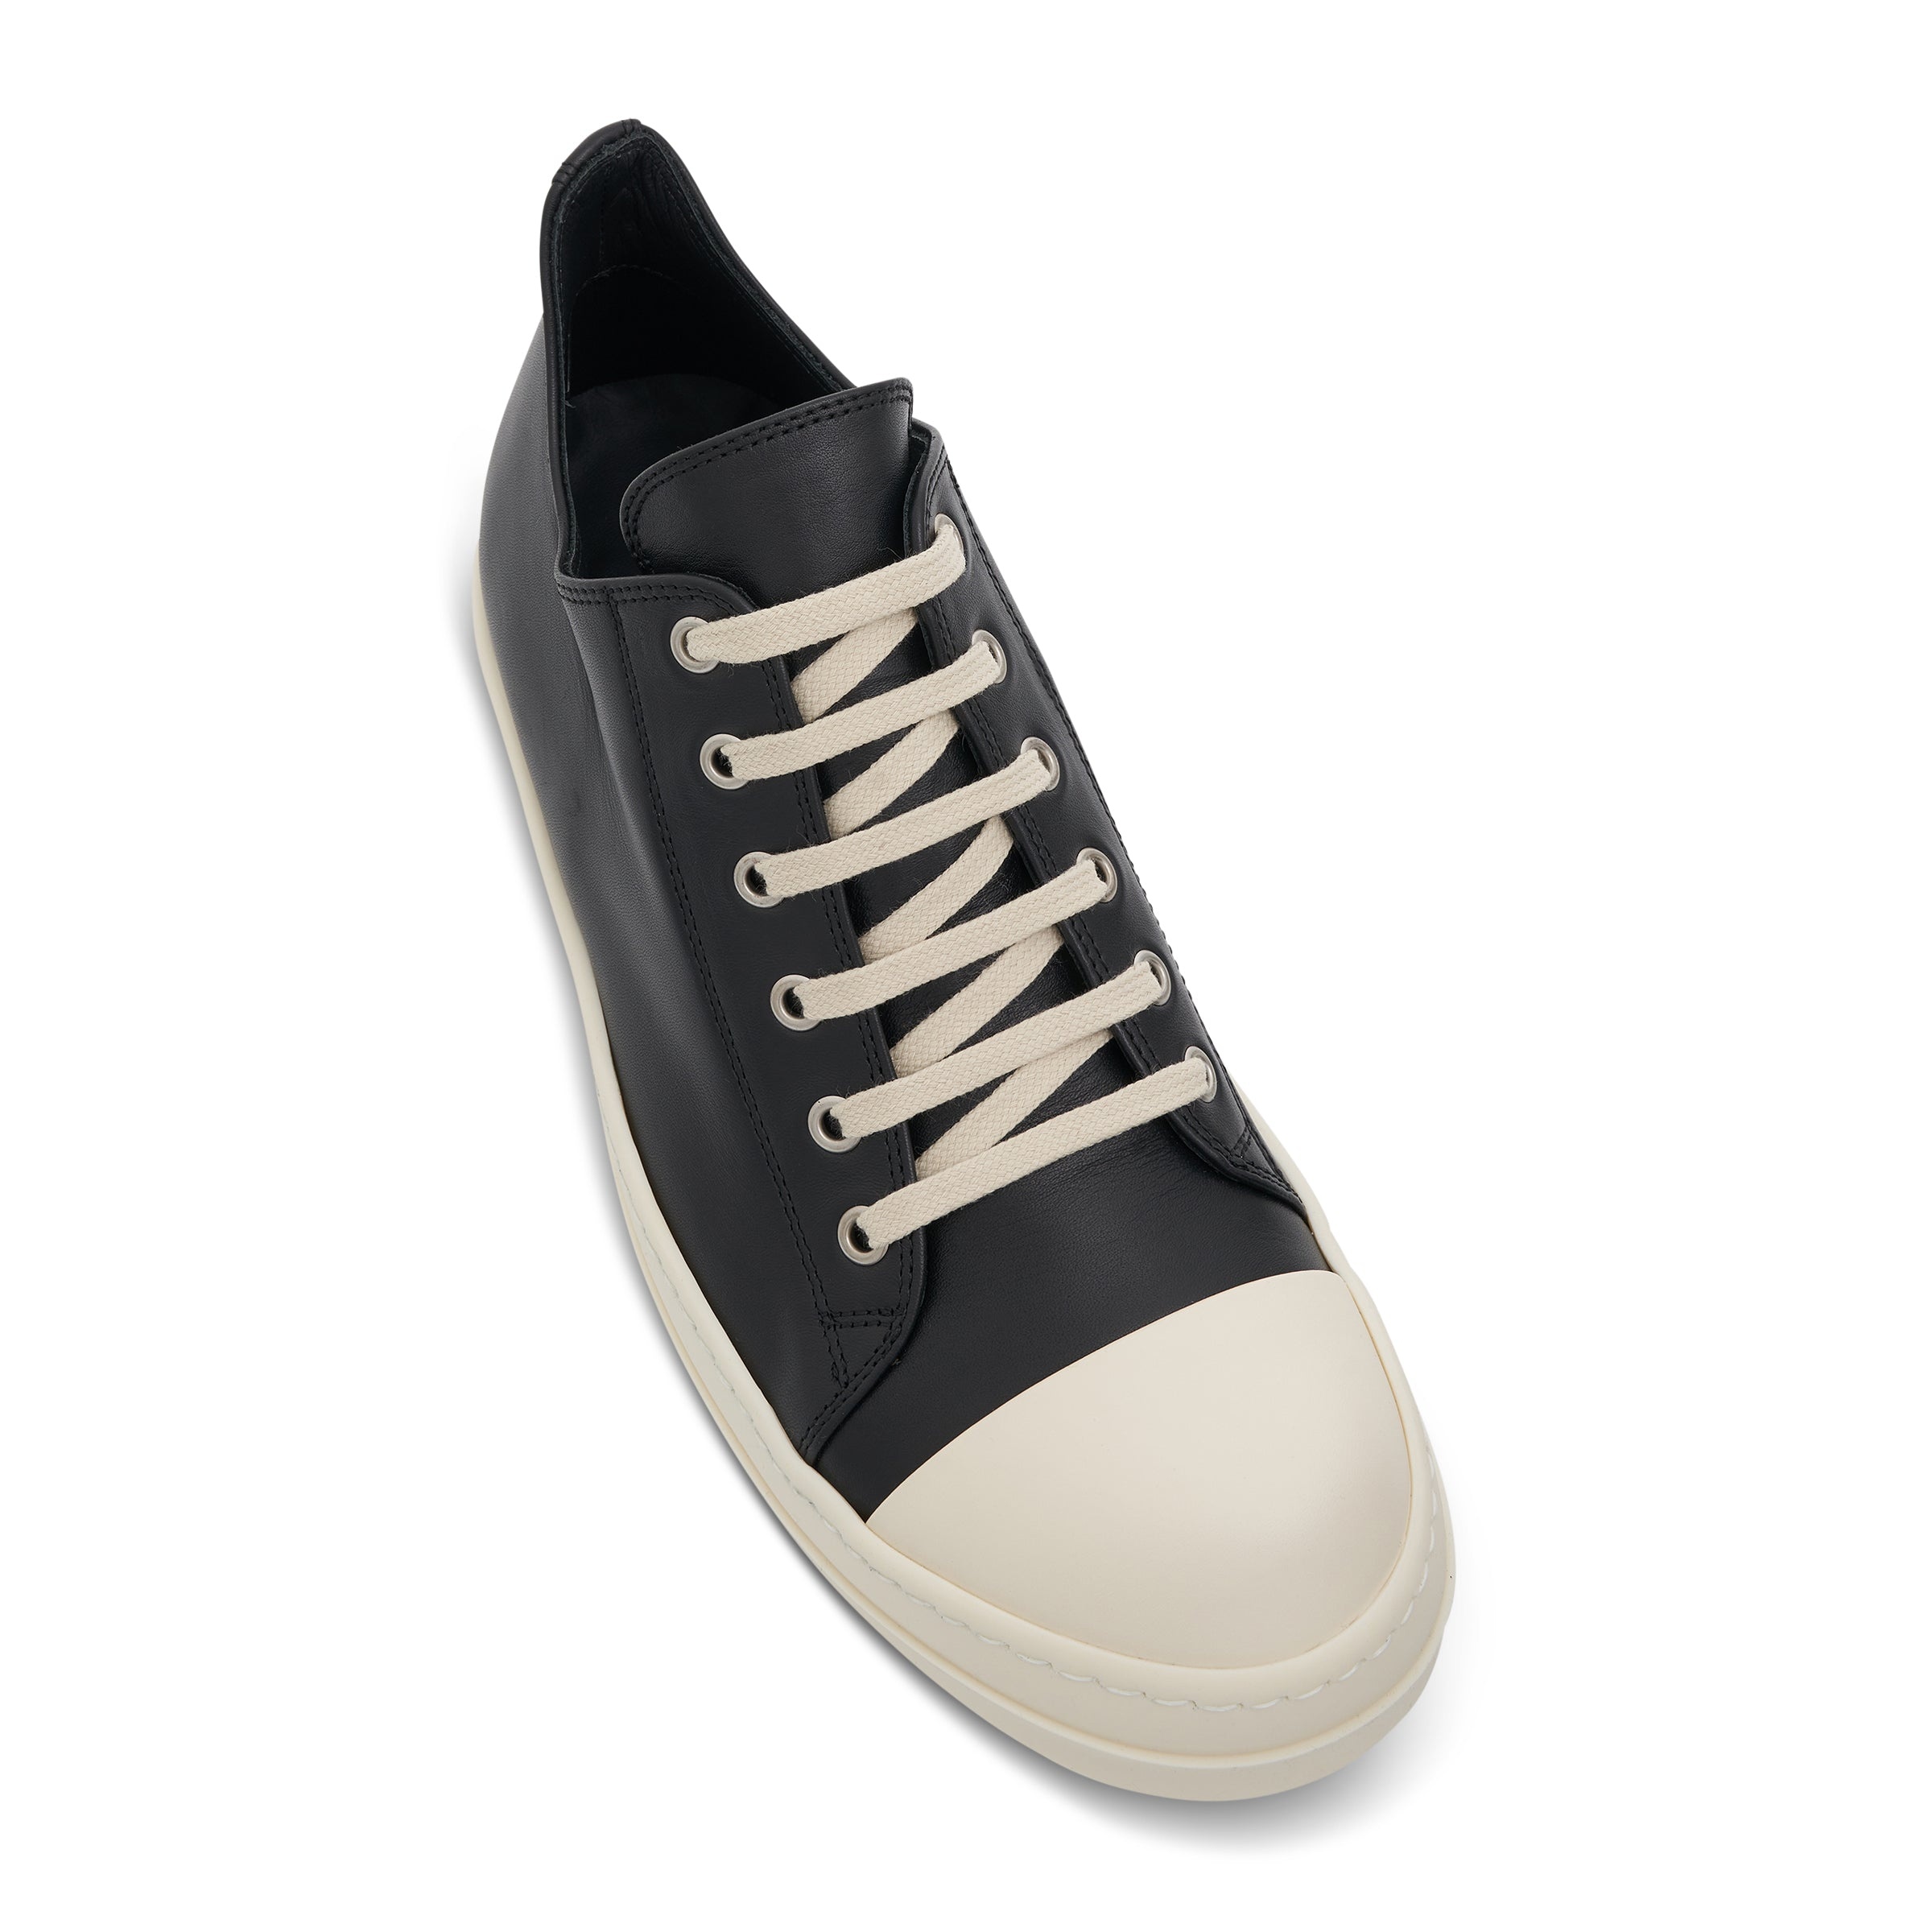 EDFU Low Leather Sneaker in Black/Milk - 4